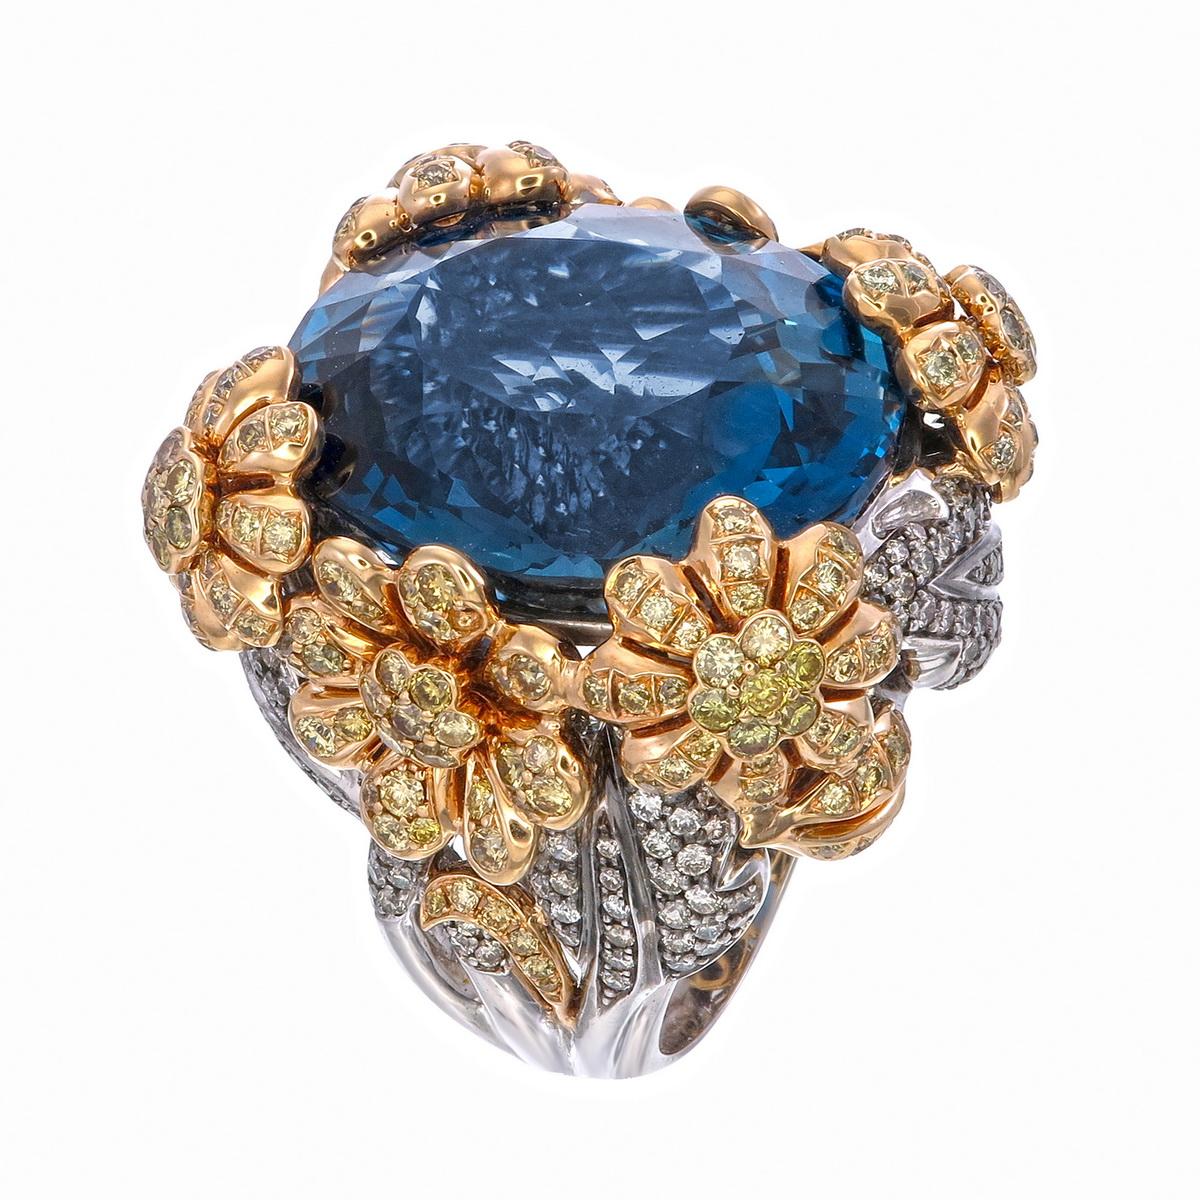 Ein 57,21-Karat-Blautopas-Blumenring mit 3,38 Karat Gelb  Diamanten und 1,97 Karat weiße Diamanten klingt nach einem atemberaubenden und luxuriösen Schmuckstück. Der Blautopas ist ein Halbedelstein, der für seine auffallend blaue Farbe bekannt ist.